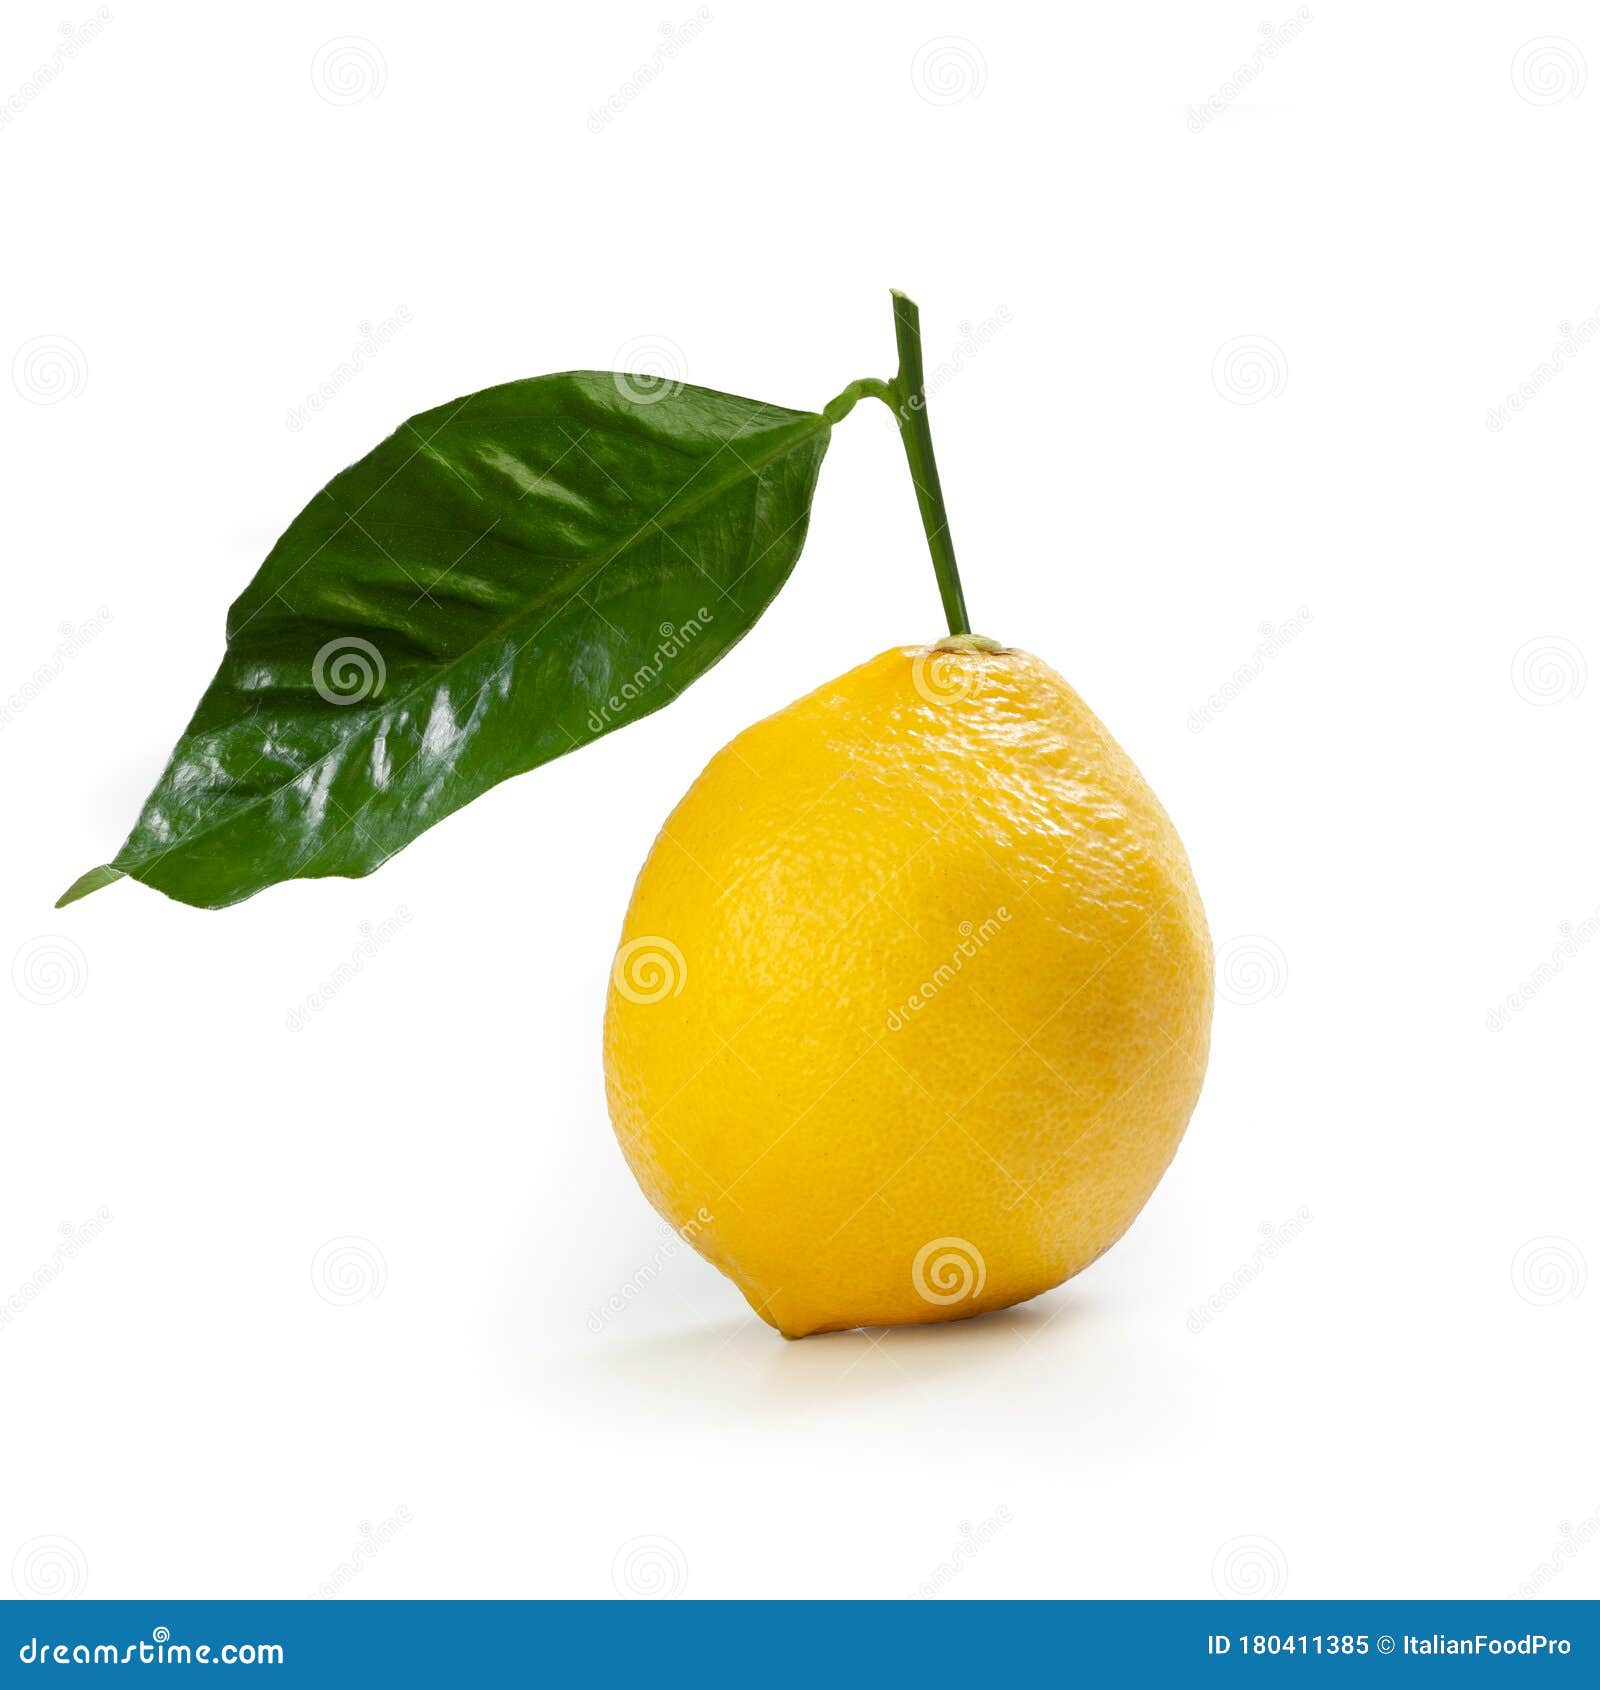 bergamot orange Ã¢â¬â `fantastico` cultivar Ã¢â¬â  on white background